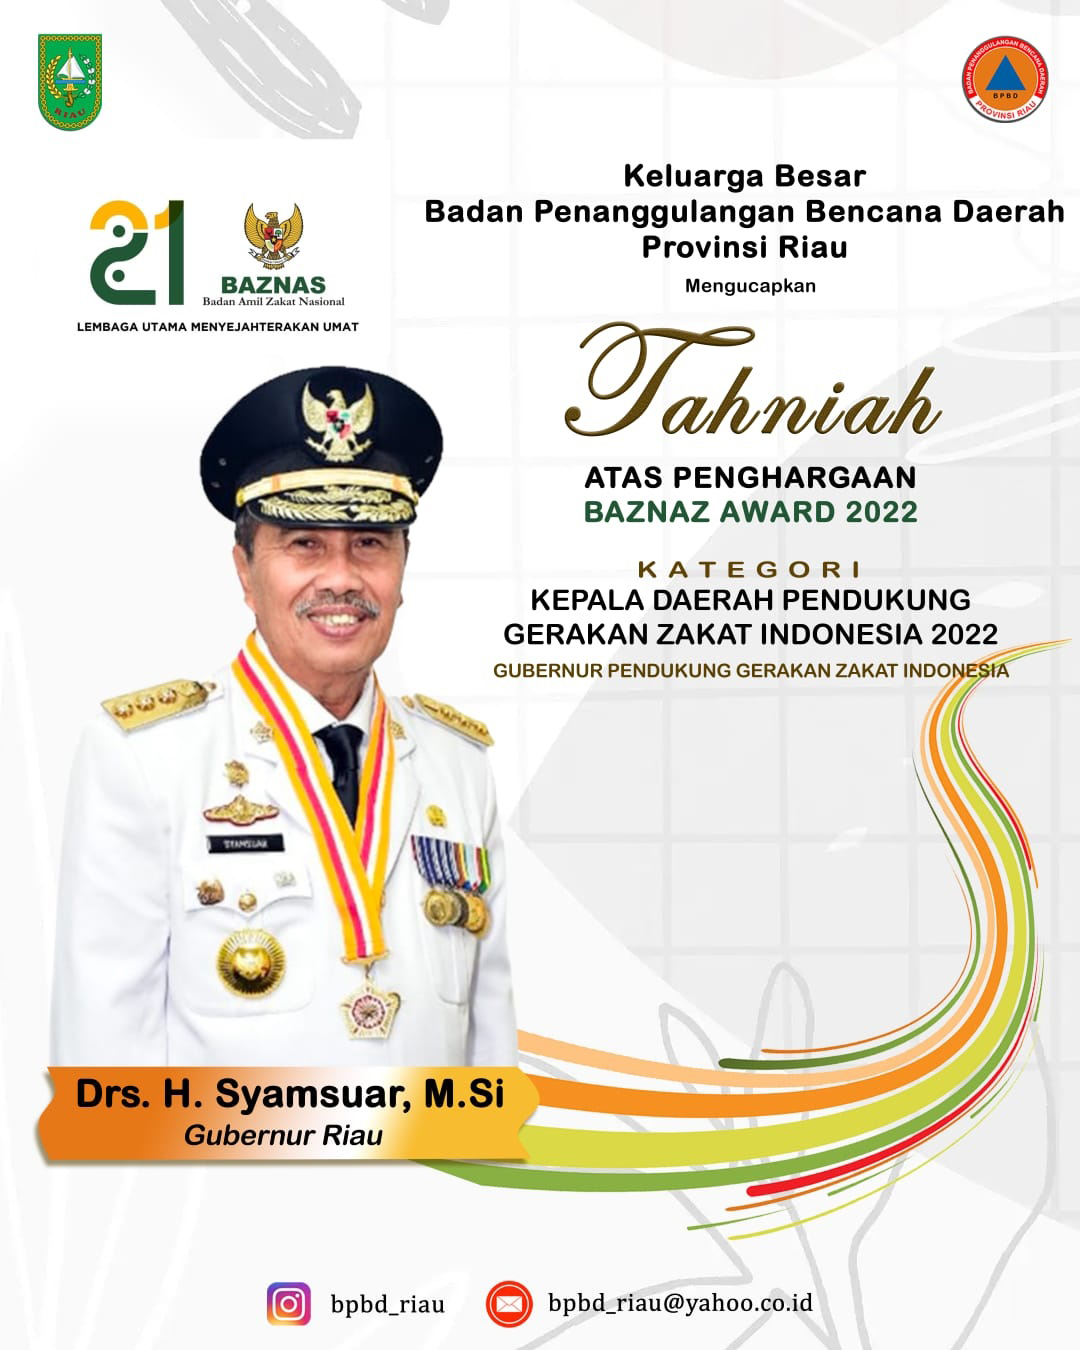 Badan Penanggulangan Bencana Daerah Provinsi Riau mengucapkan Tahniah Atas Penghargaan Baznaz Award 